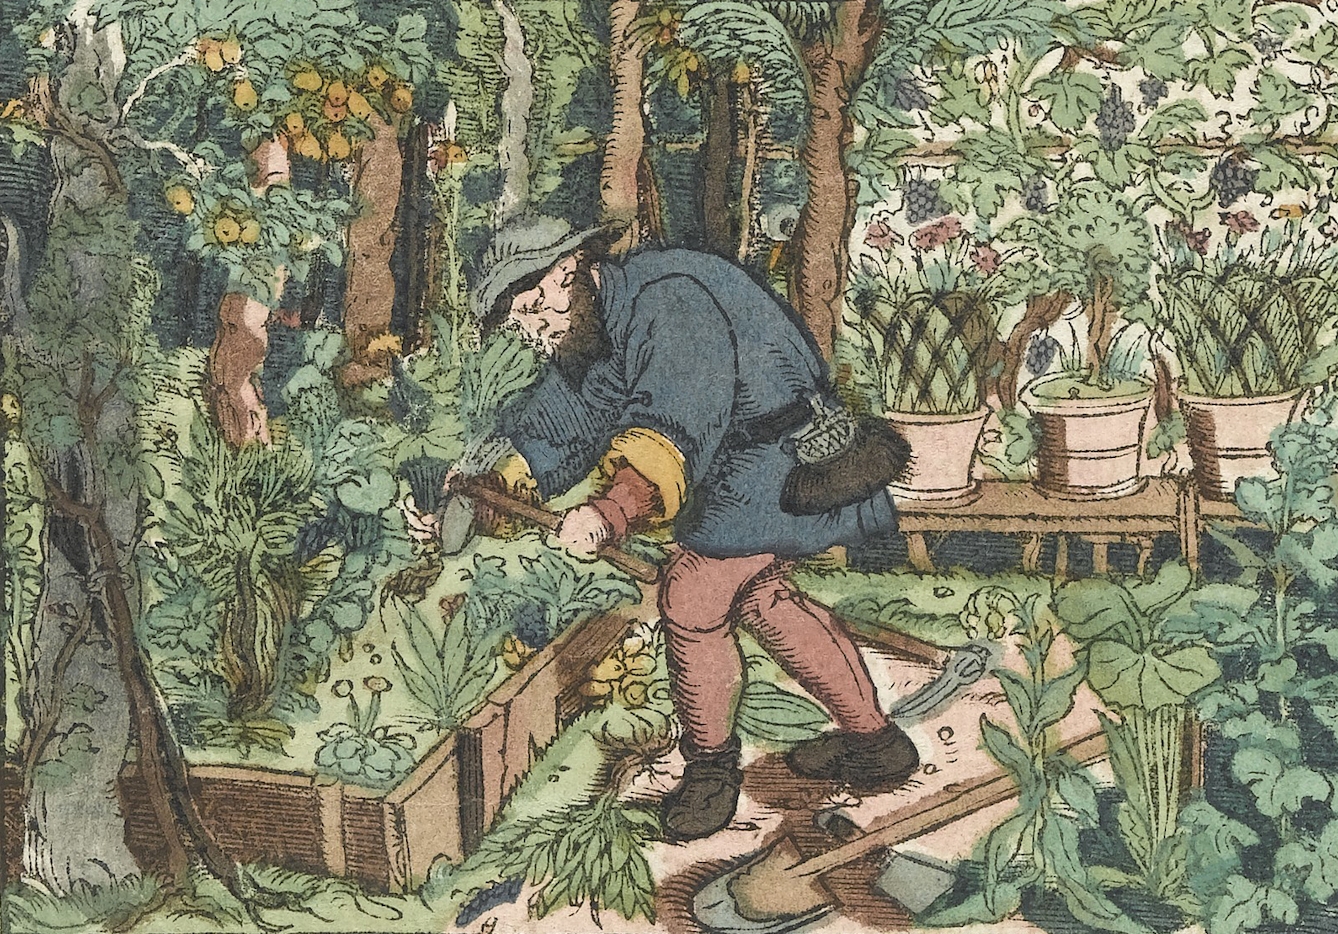 Man working in a herb garden